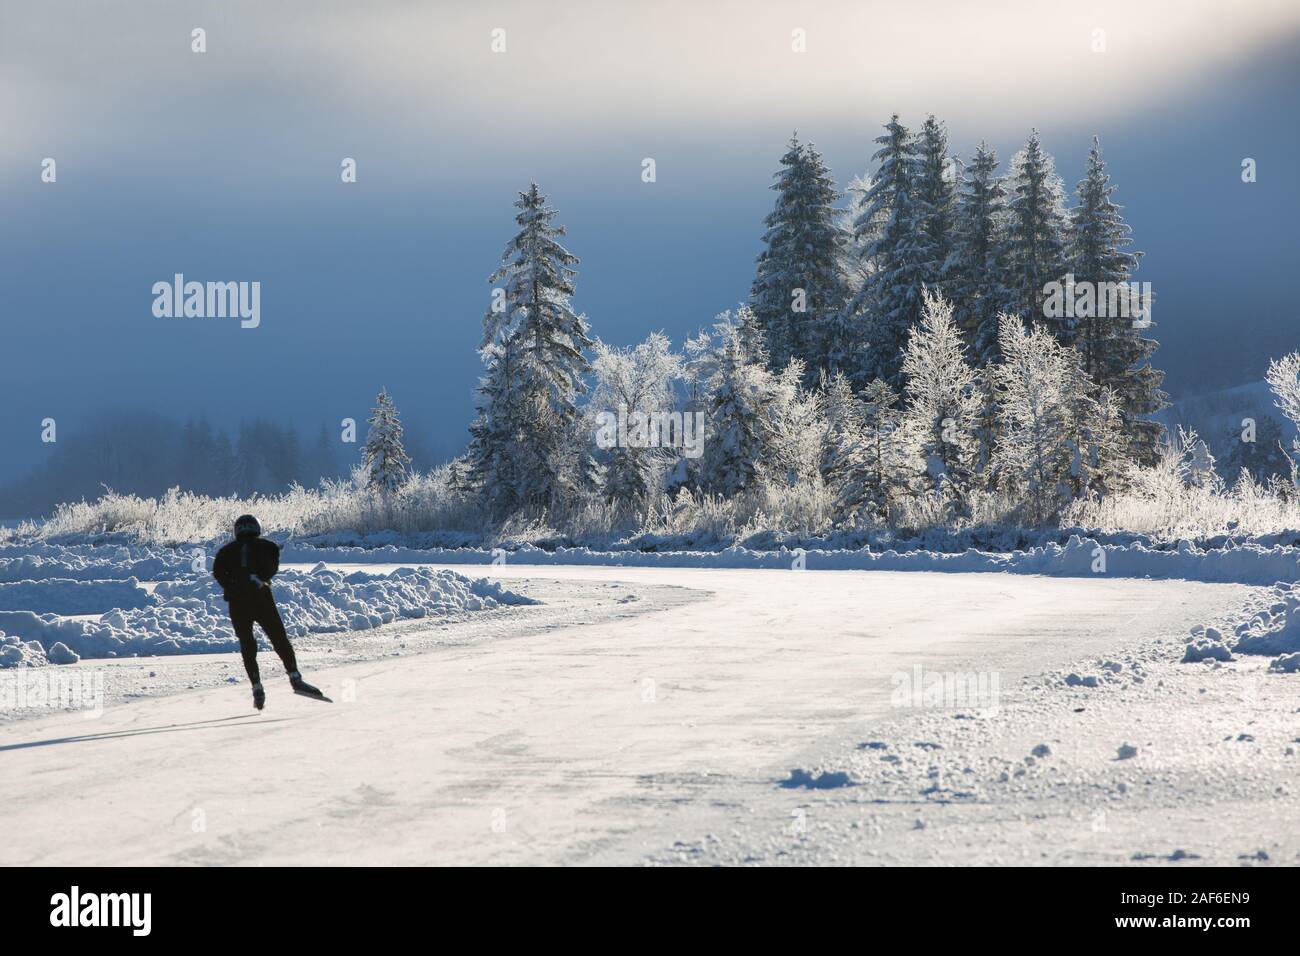 Kalten sonnigen Morgen. Eine Gruppe von gefrorenen Bäumen und einem Ice skater Skate über einen gefrorenen See bei Sonnenaufgang, Weissensee, Kärnten, Alpen, Österreich Stockfoto